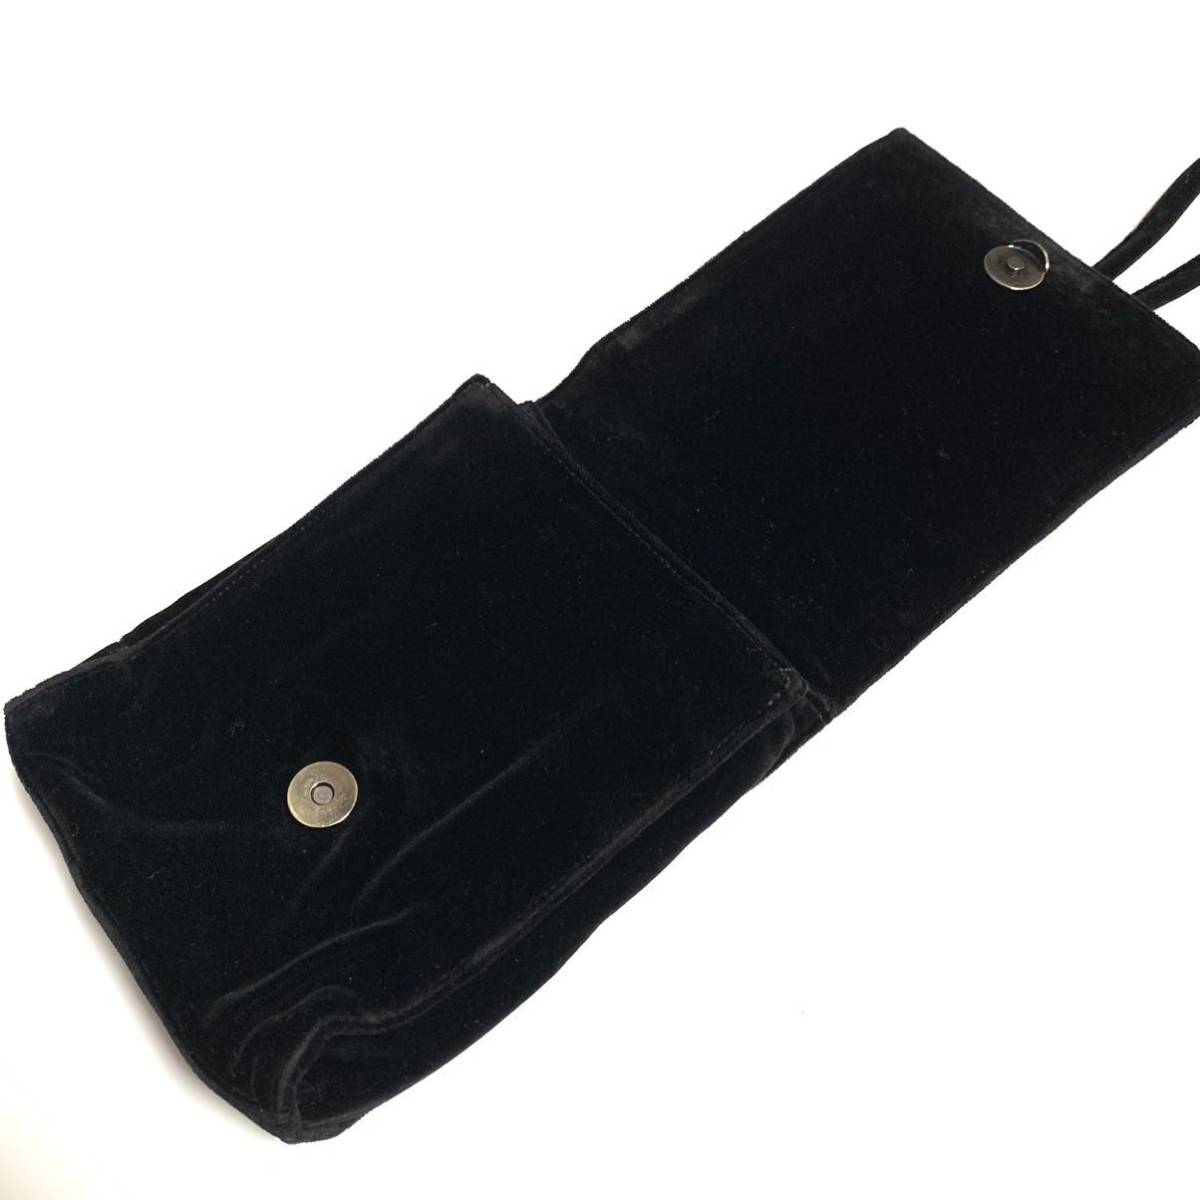 【ANTEPRIMA】アンテプリマ ショルダーバッグ 斜めがけショルダー ミニサイズ ブラック 保存袋付き ※ワイヤーバッグではありません_画像7